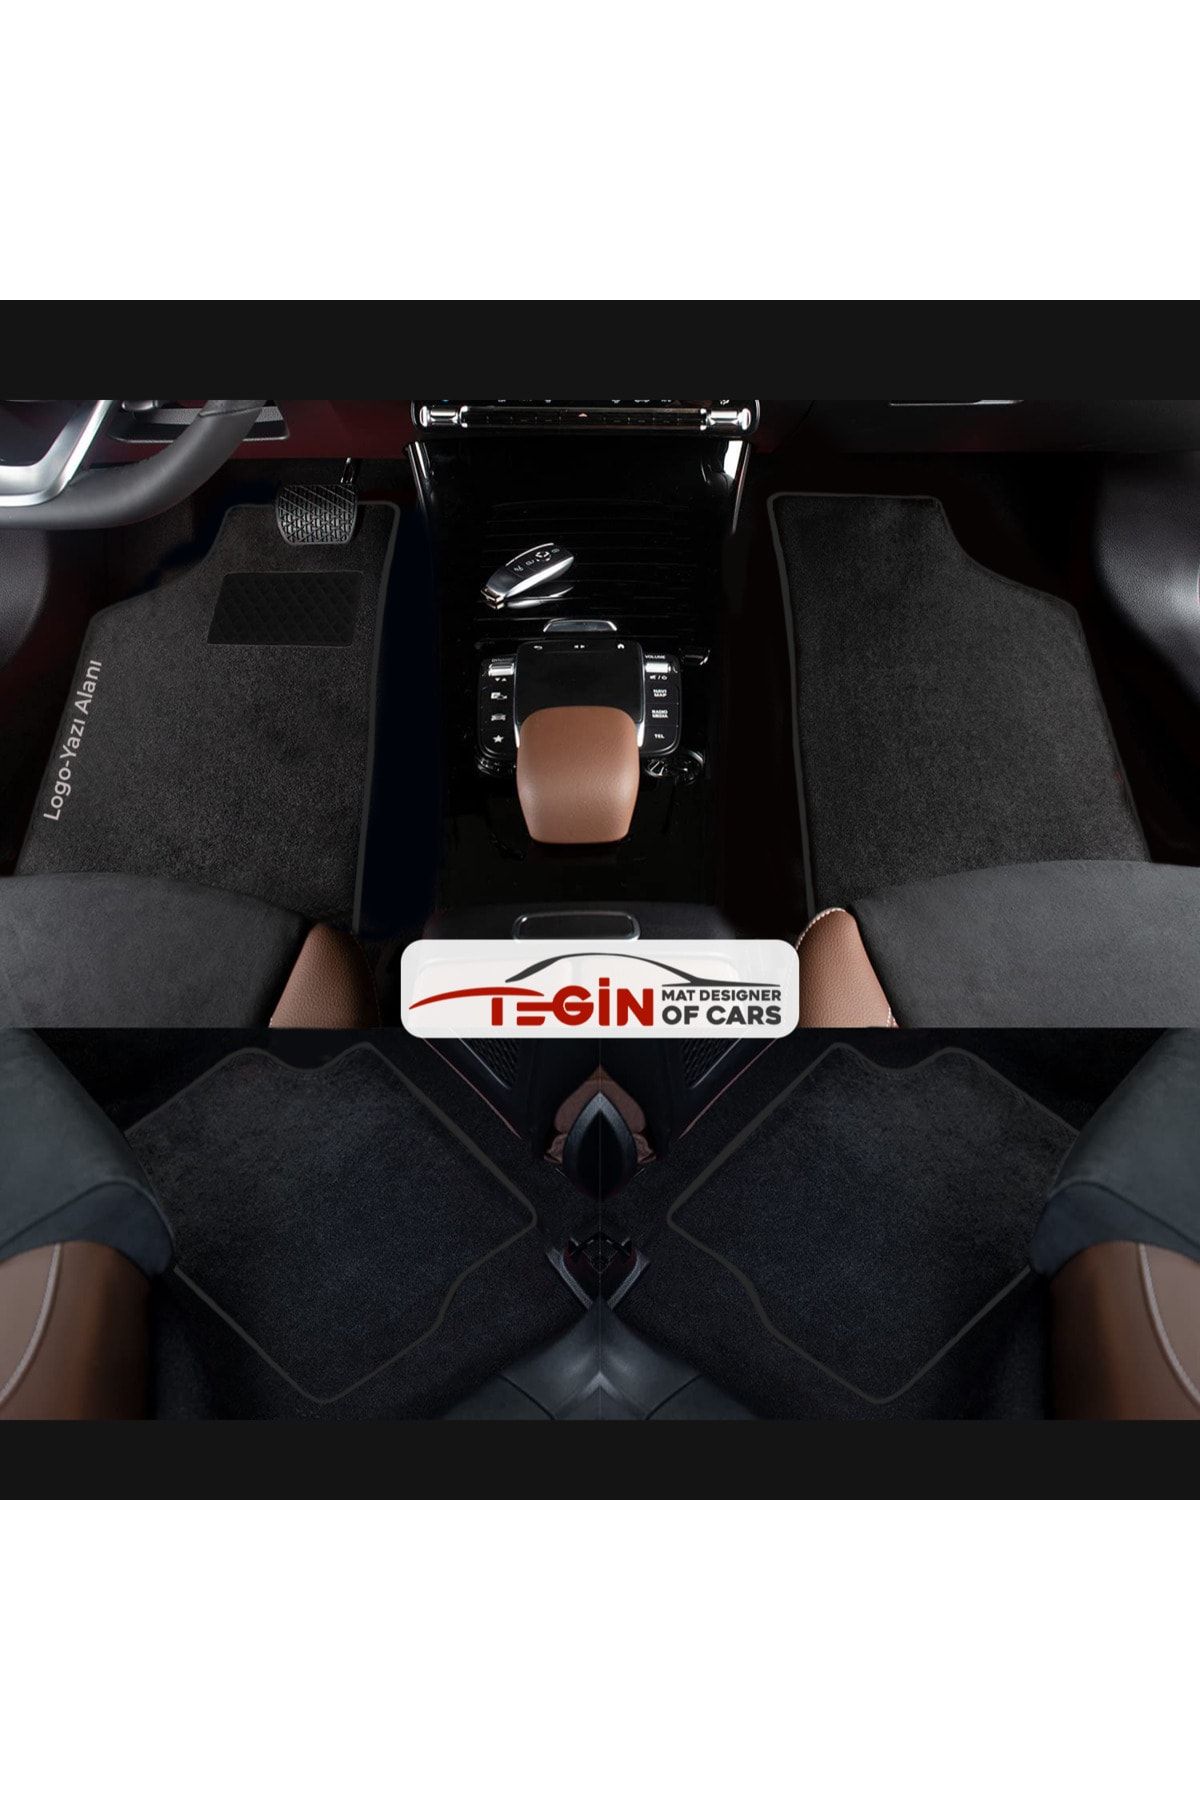 Tegin Mat Designer Of Cars Volkwagen Golf 7 2013+ Coupe Aracınıza Özel Prime Siyah Halı Siyah Kenar Halı Paspas